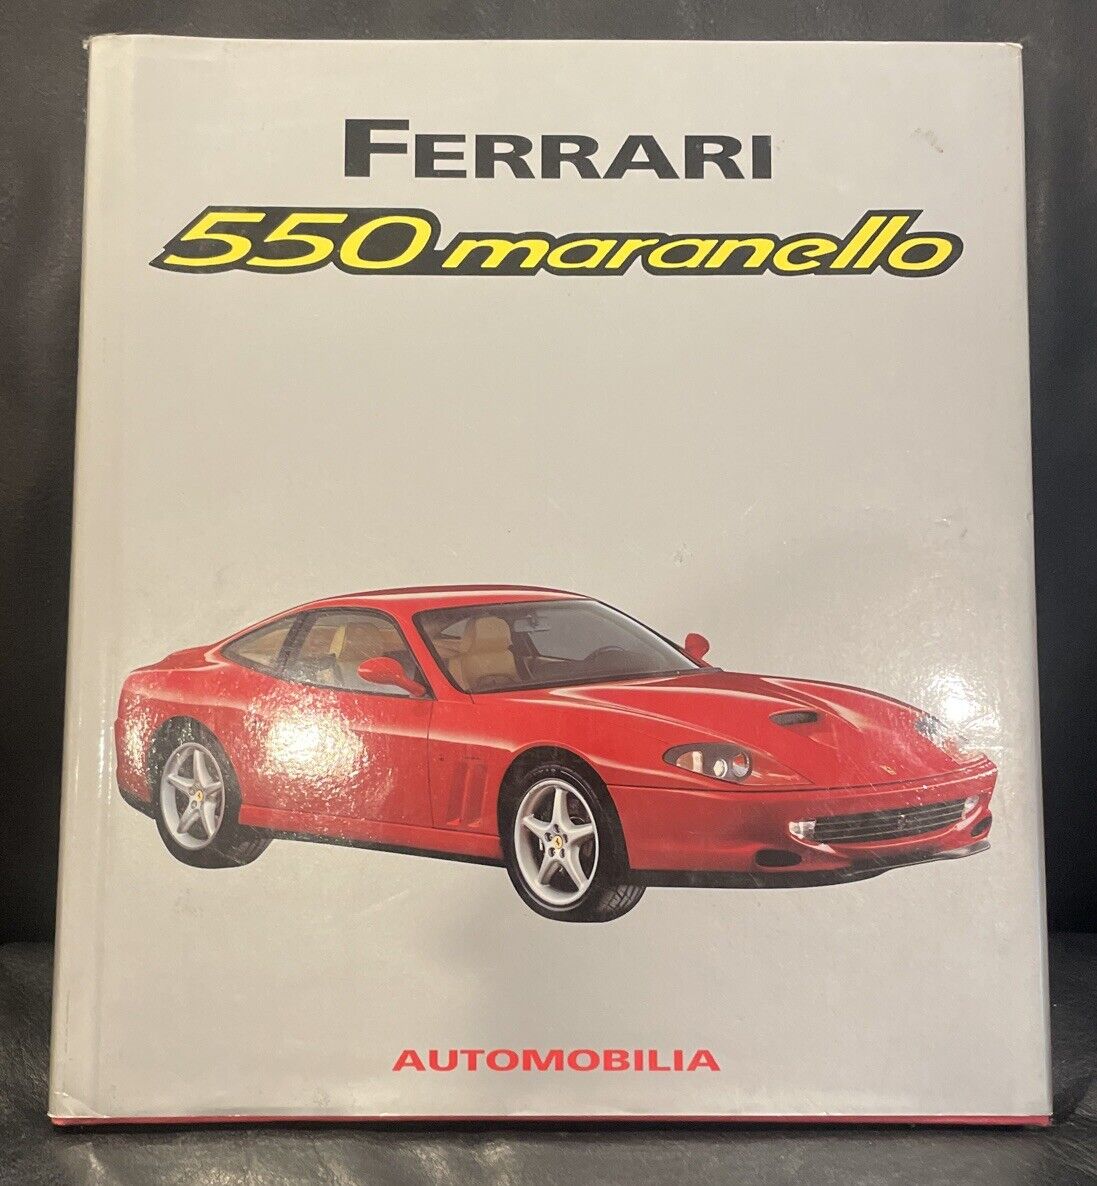 FERRARI 550 MARANELLO AUTOMOBILIA OUT OF PRINT BOOK 2000 ALFIERI MULTILANGUAGE